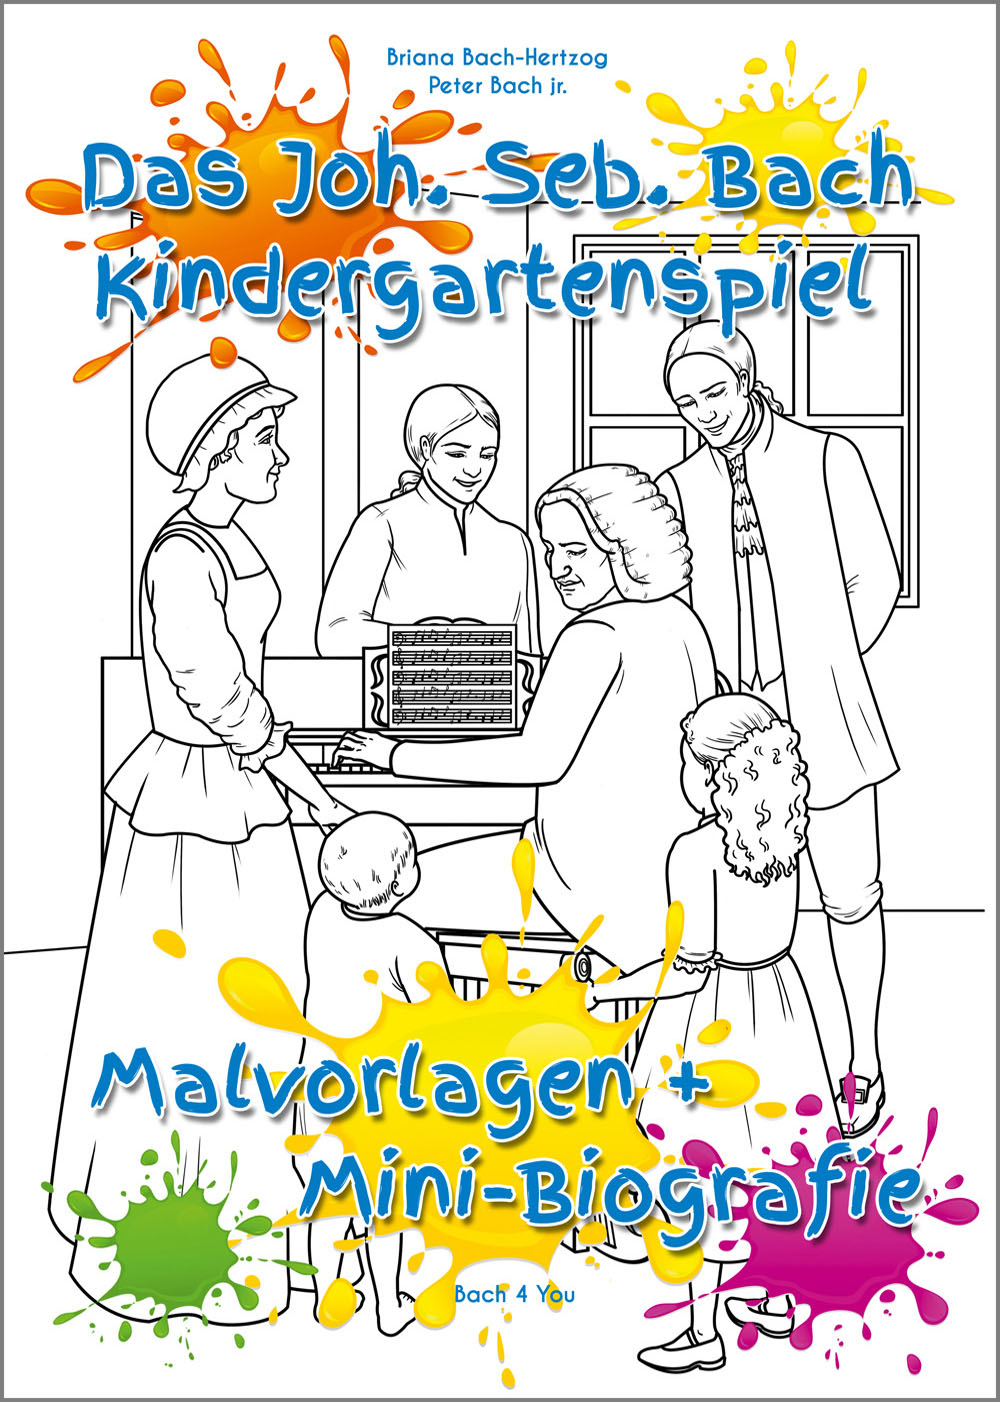 Das Johann-Sebastian-Bach-Kindergartenspiel. In der Mitte ist eine Familie rund um den Vater am Klavier zum Ausmalen. Unten sind Farbkleckse, oben ist der Titel des Spiels.